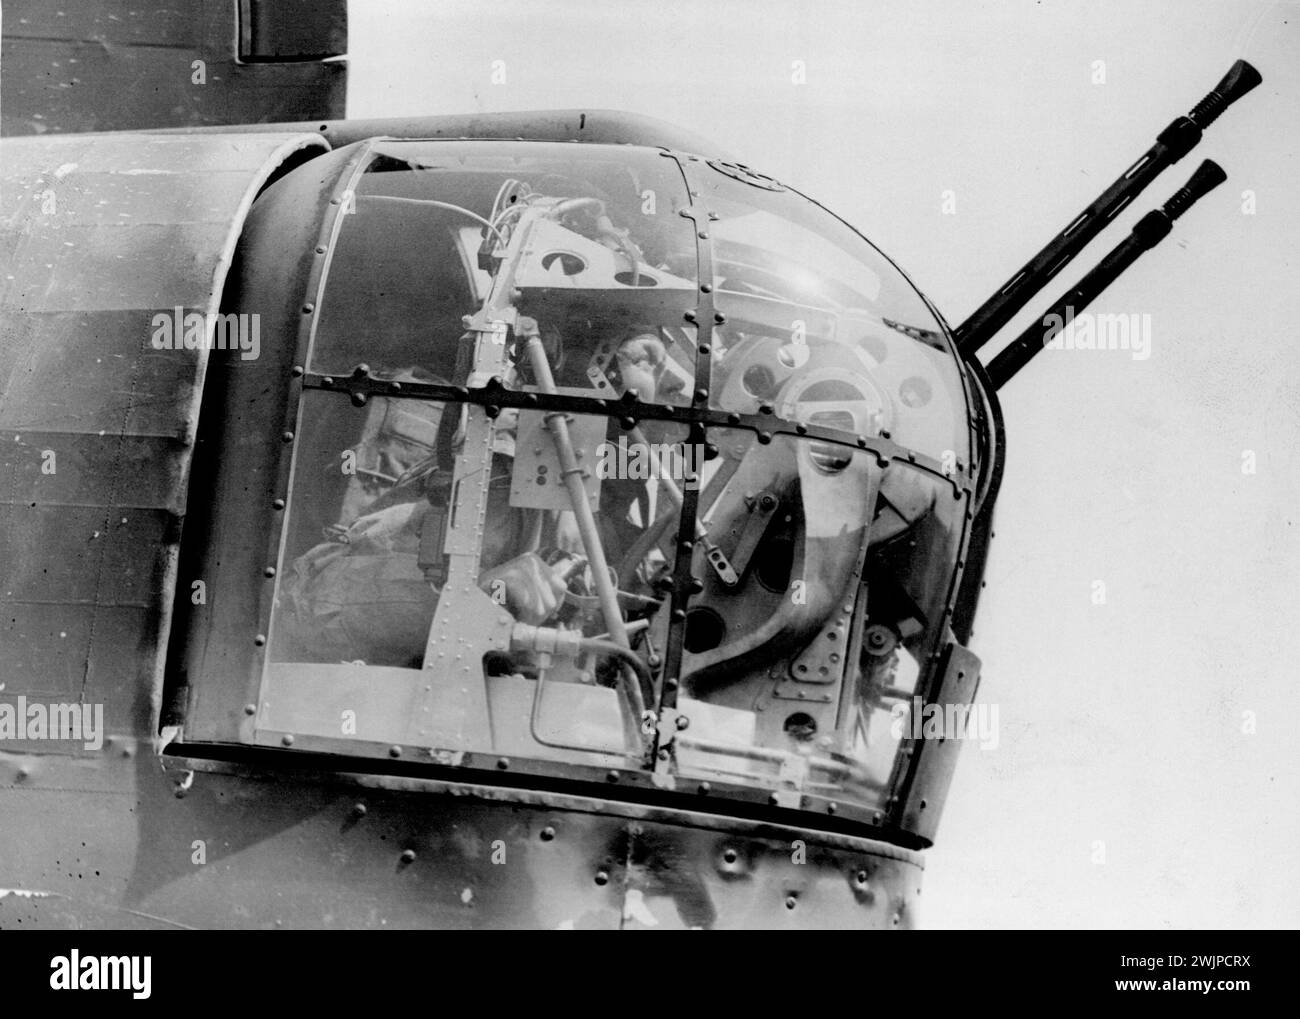 Ein hinterer Schütze eines britischen Bombers, der auf einer Bomberstation gefangen wurde, bevor er zu einem Angriff auf Deutschland aufbrach. Oktober 1940. Stockfoto